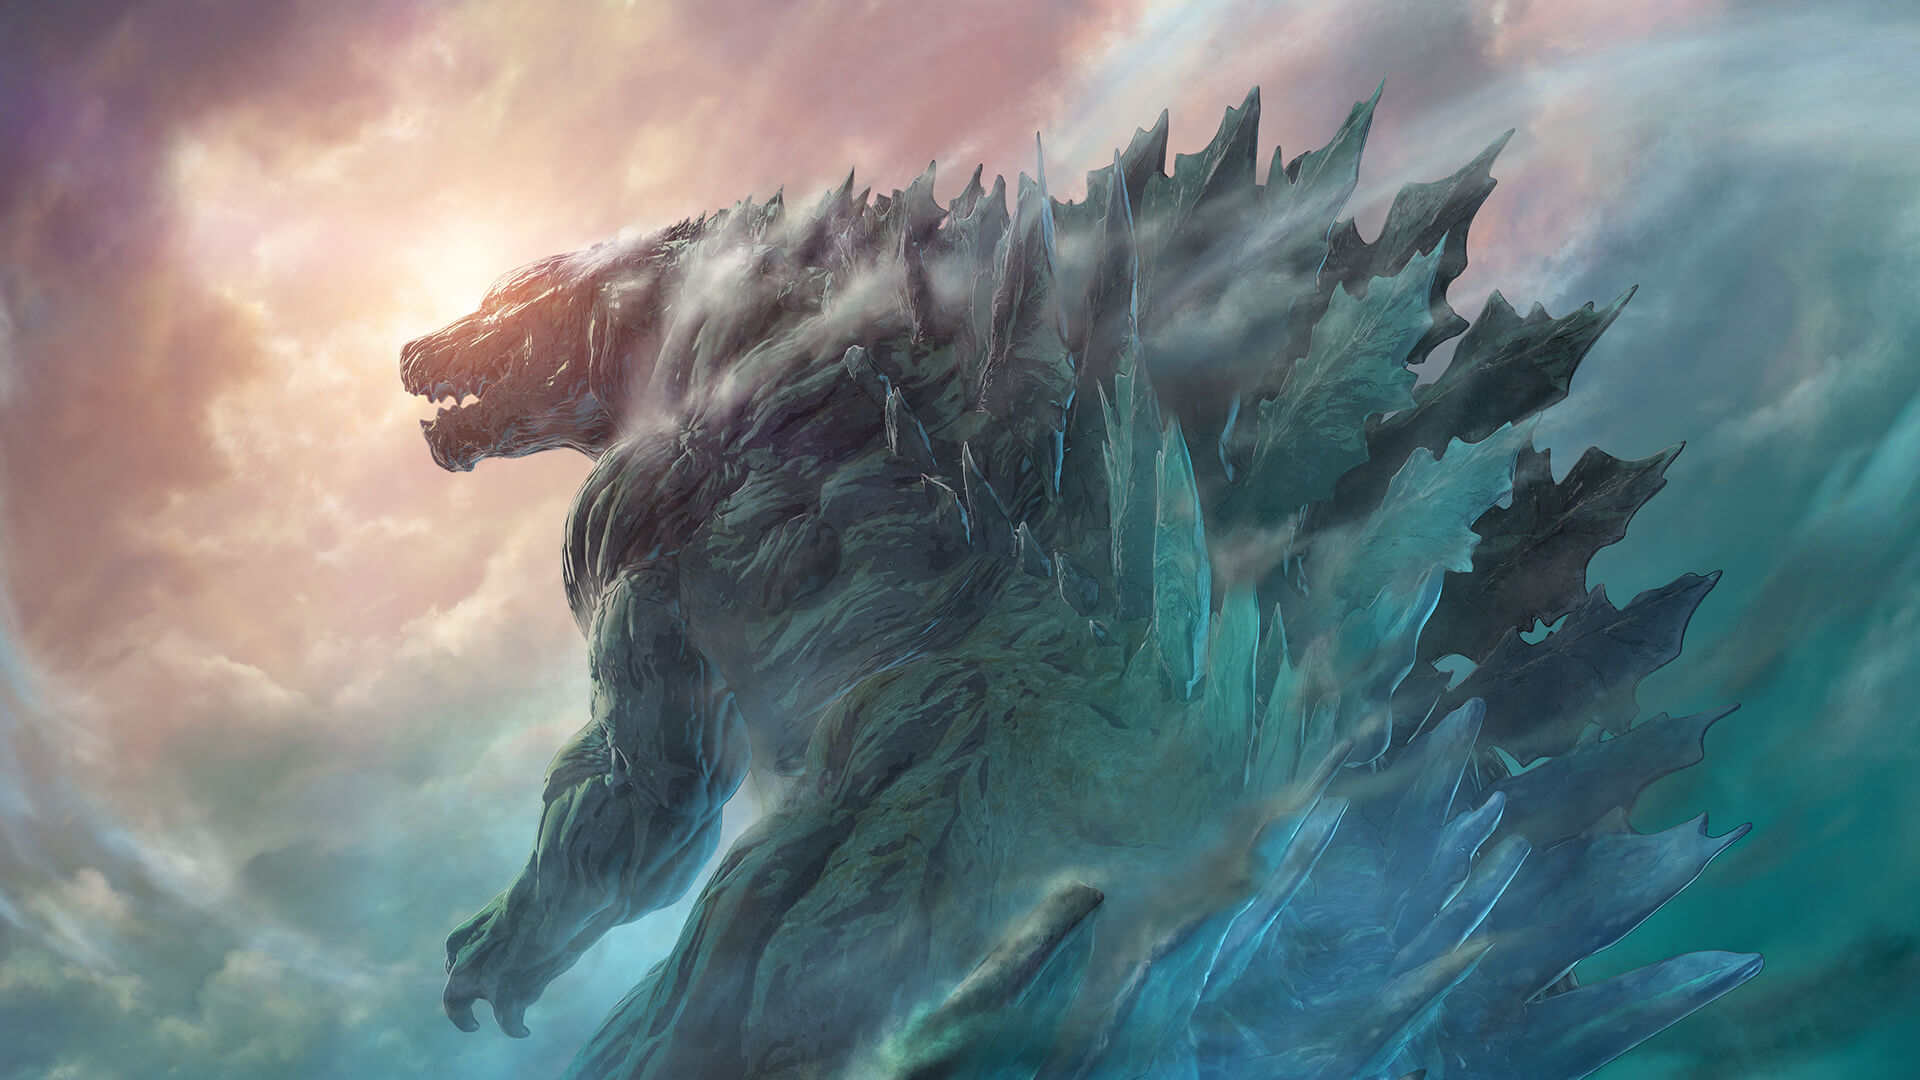 Descargar fondos de escritorio de Godzilla: The Planet Eater HD